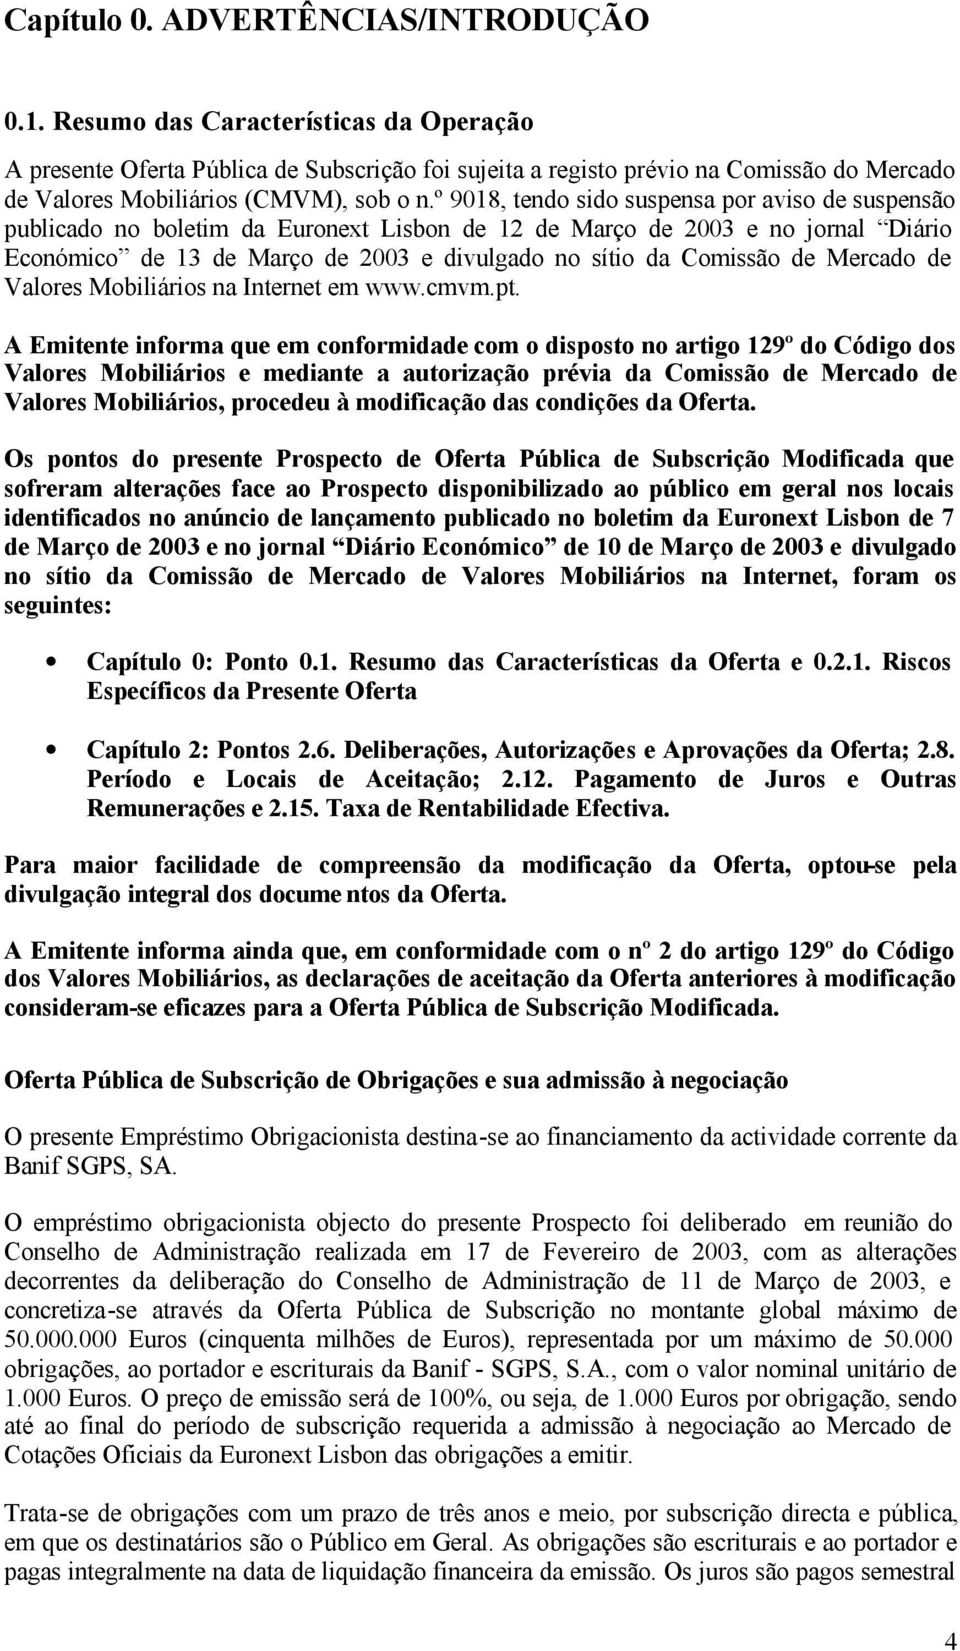 º 9018, tendo sido suspensa por aviso de suspensão publicado no boletim da Euronext Lisbon de 12 de Março de 2003 e no jornal Diário Económico de 13 de Março de 2003 e divulgado no sítio da Comissão